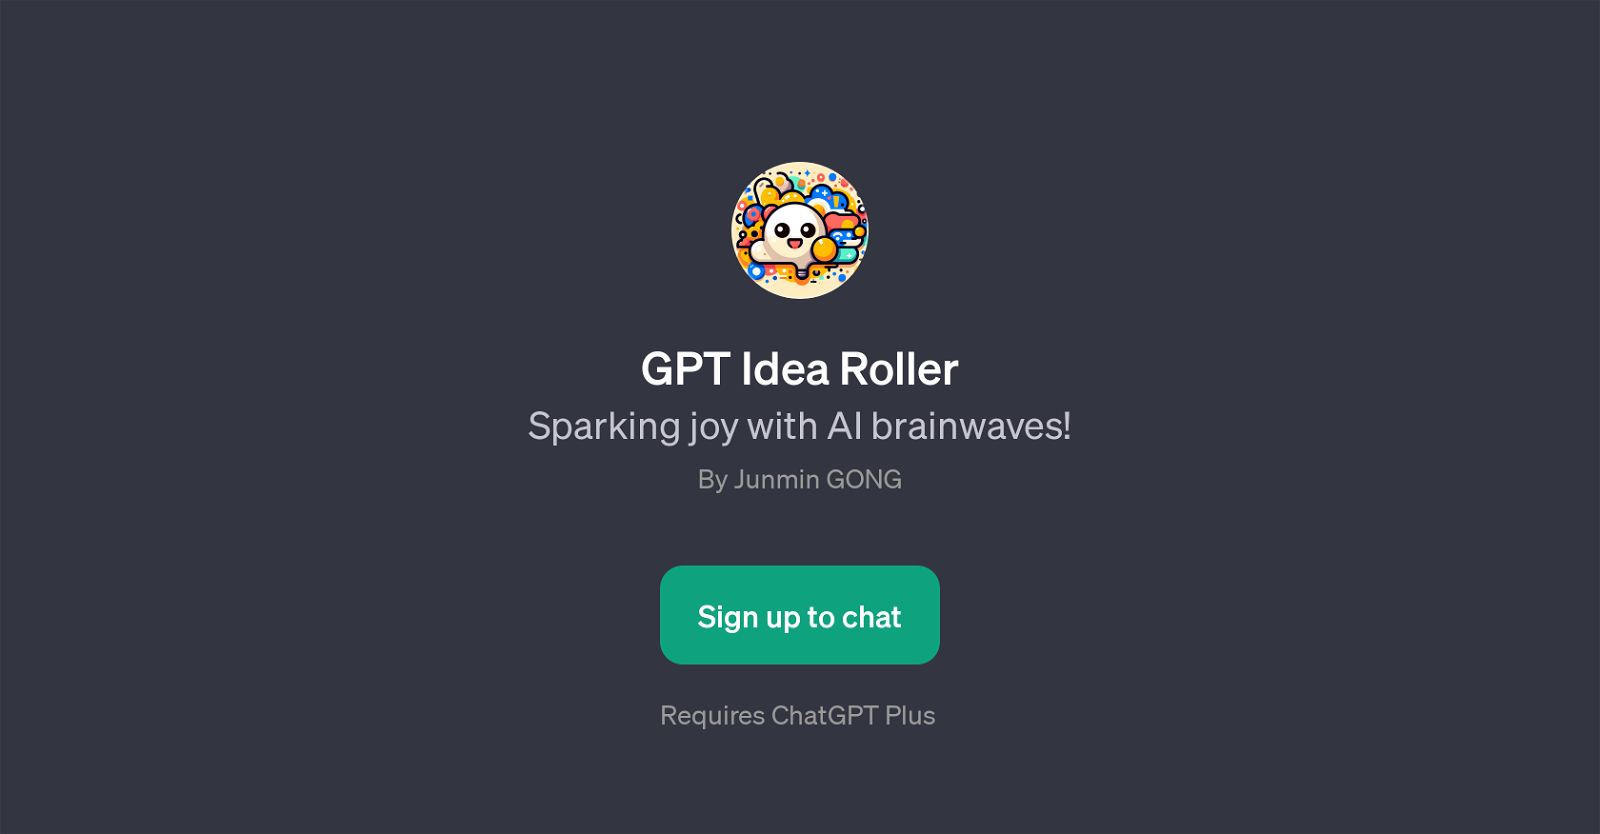 GPT Idea Roller website